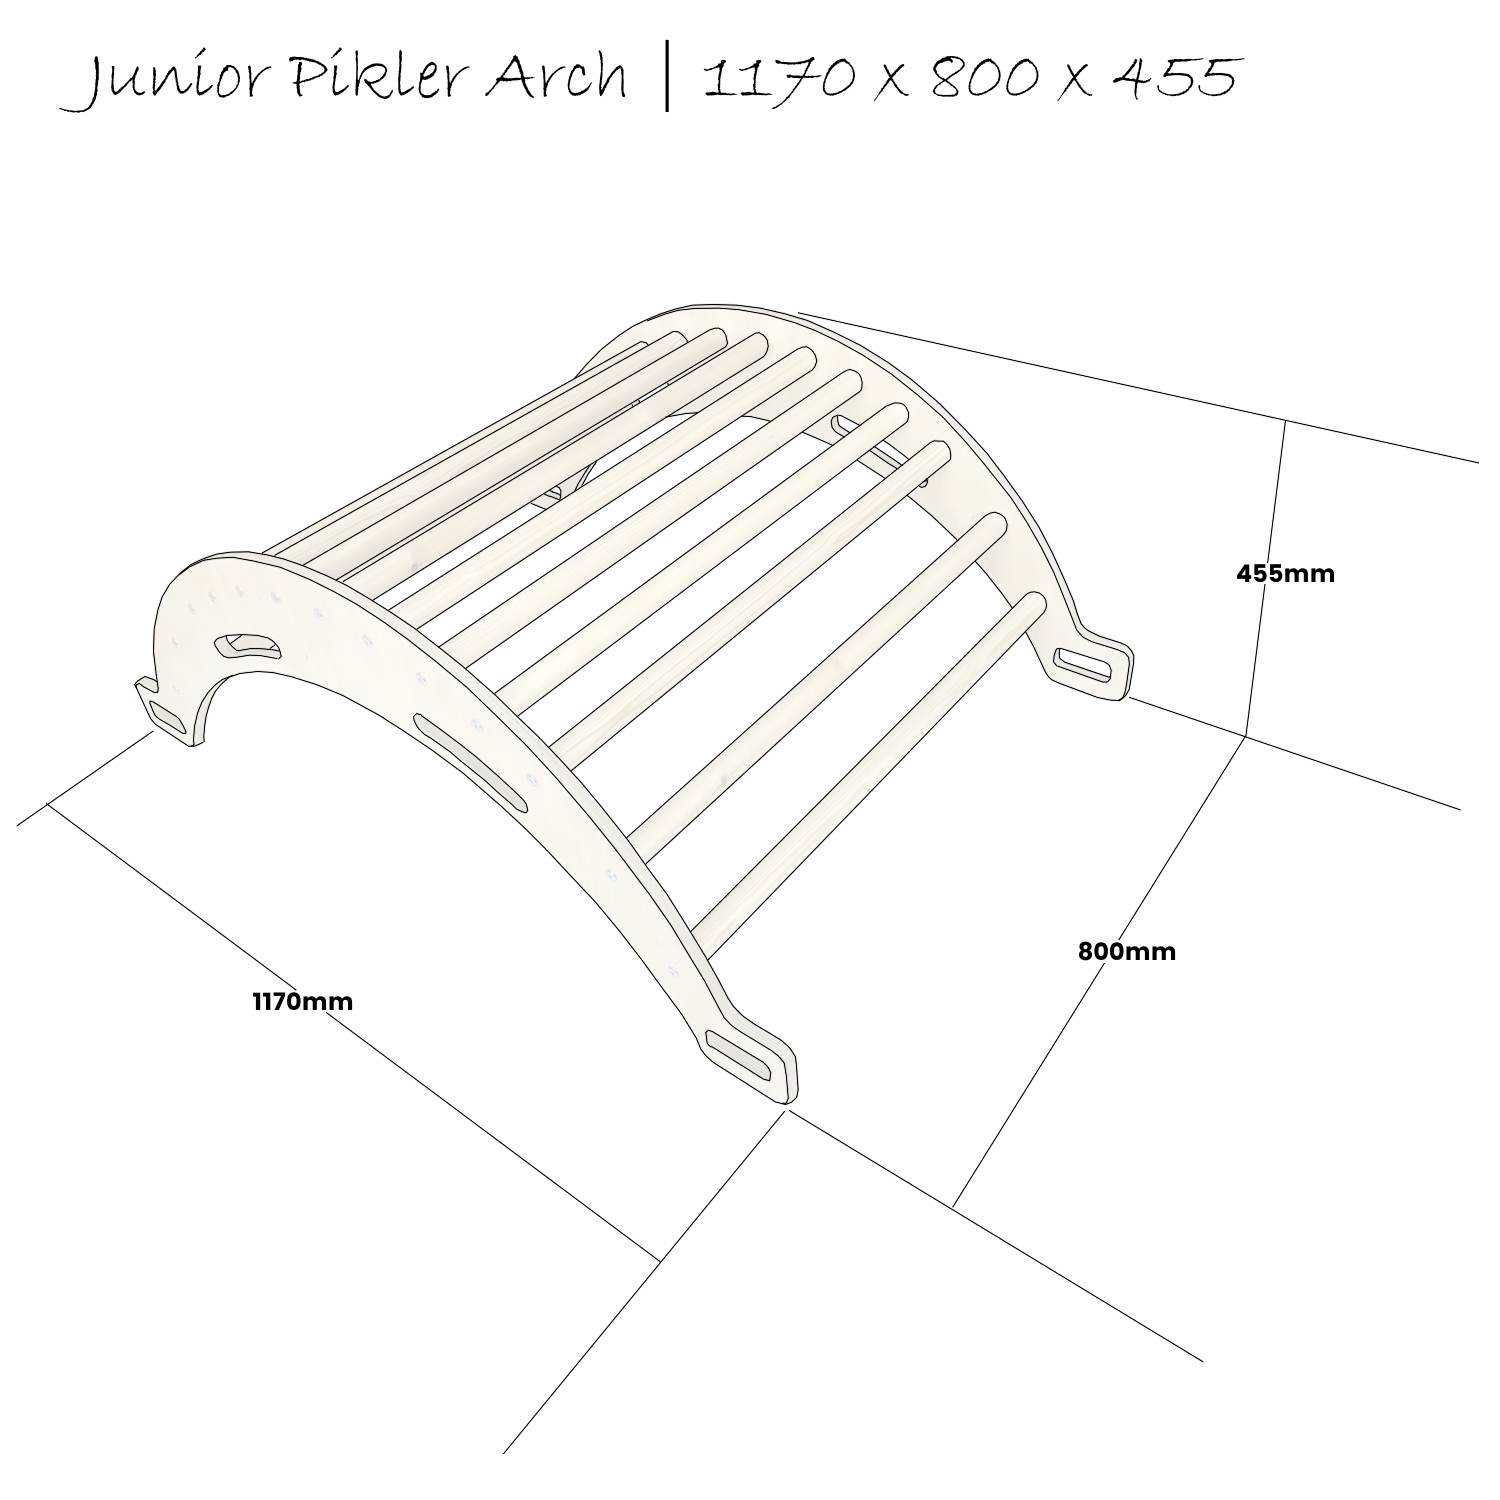 Junior Pikler Arch Schematic 1170x800x455